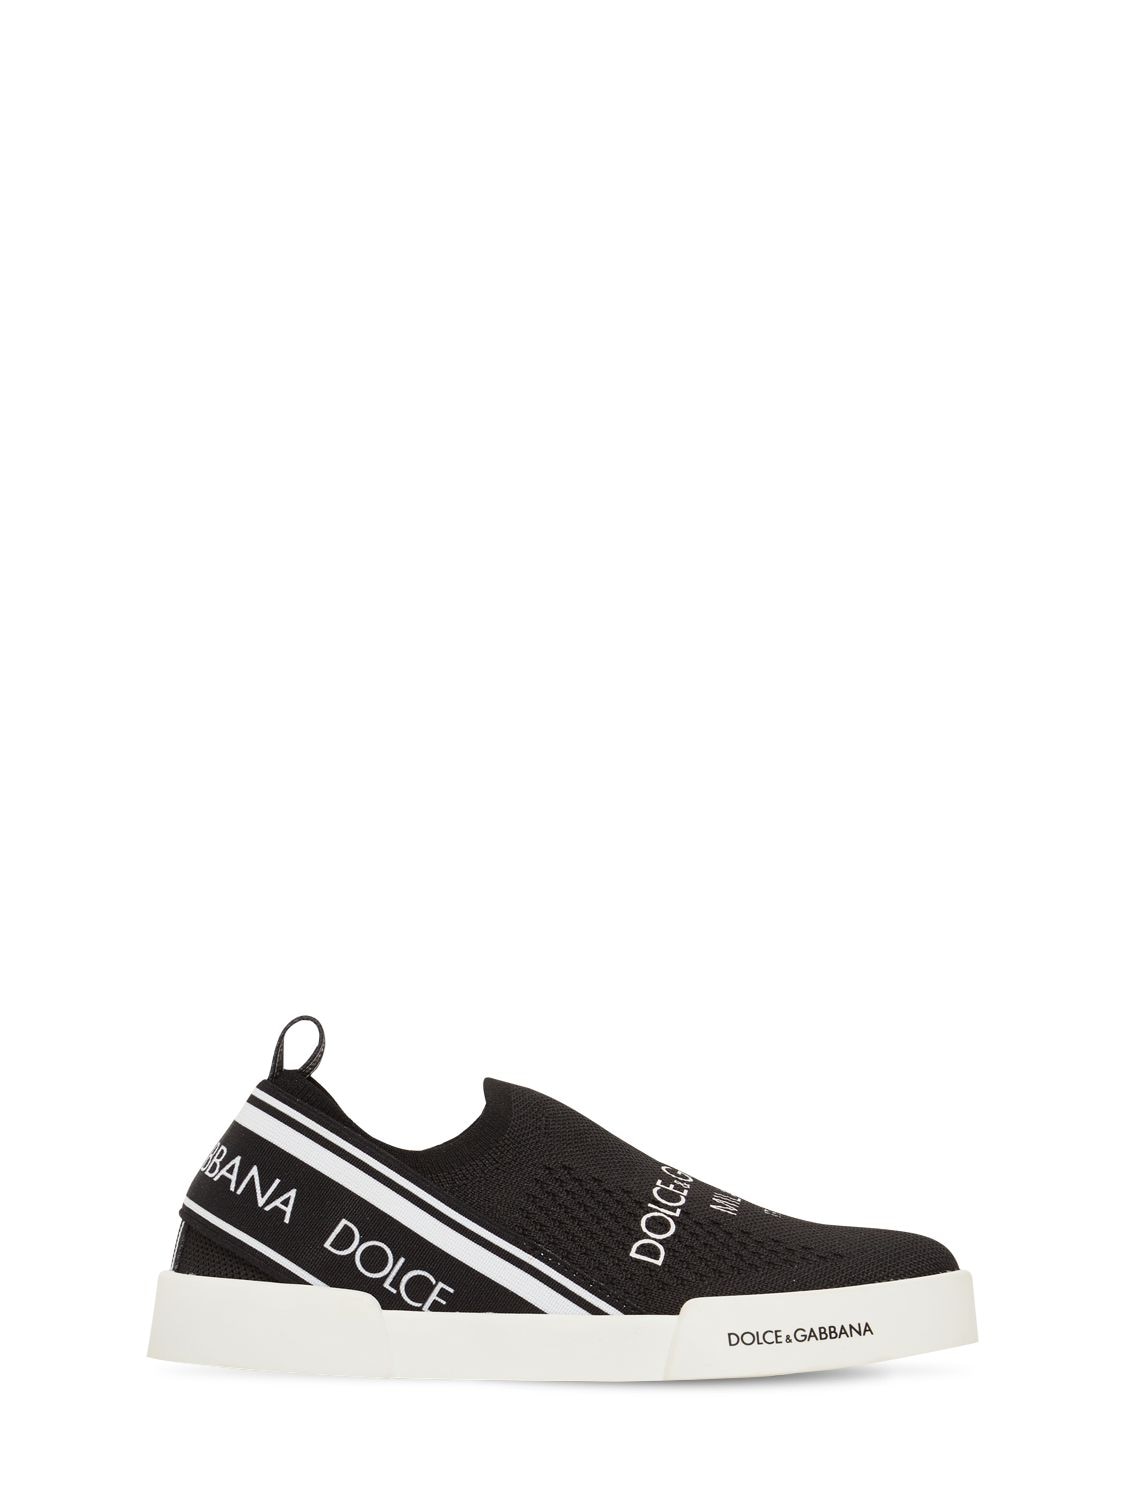 Dolce & Gabbana Kids' Neoprene Slip-on Sneakers In Black